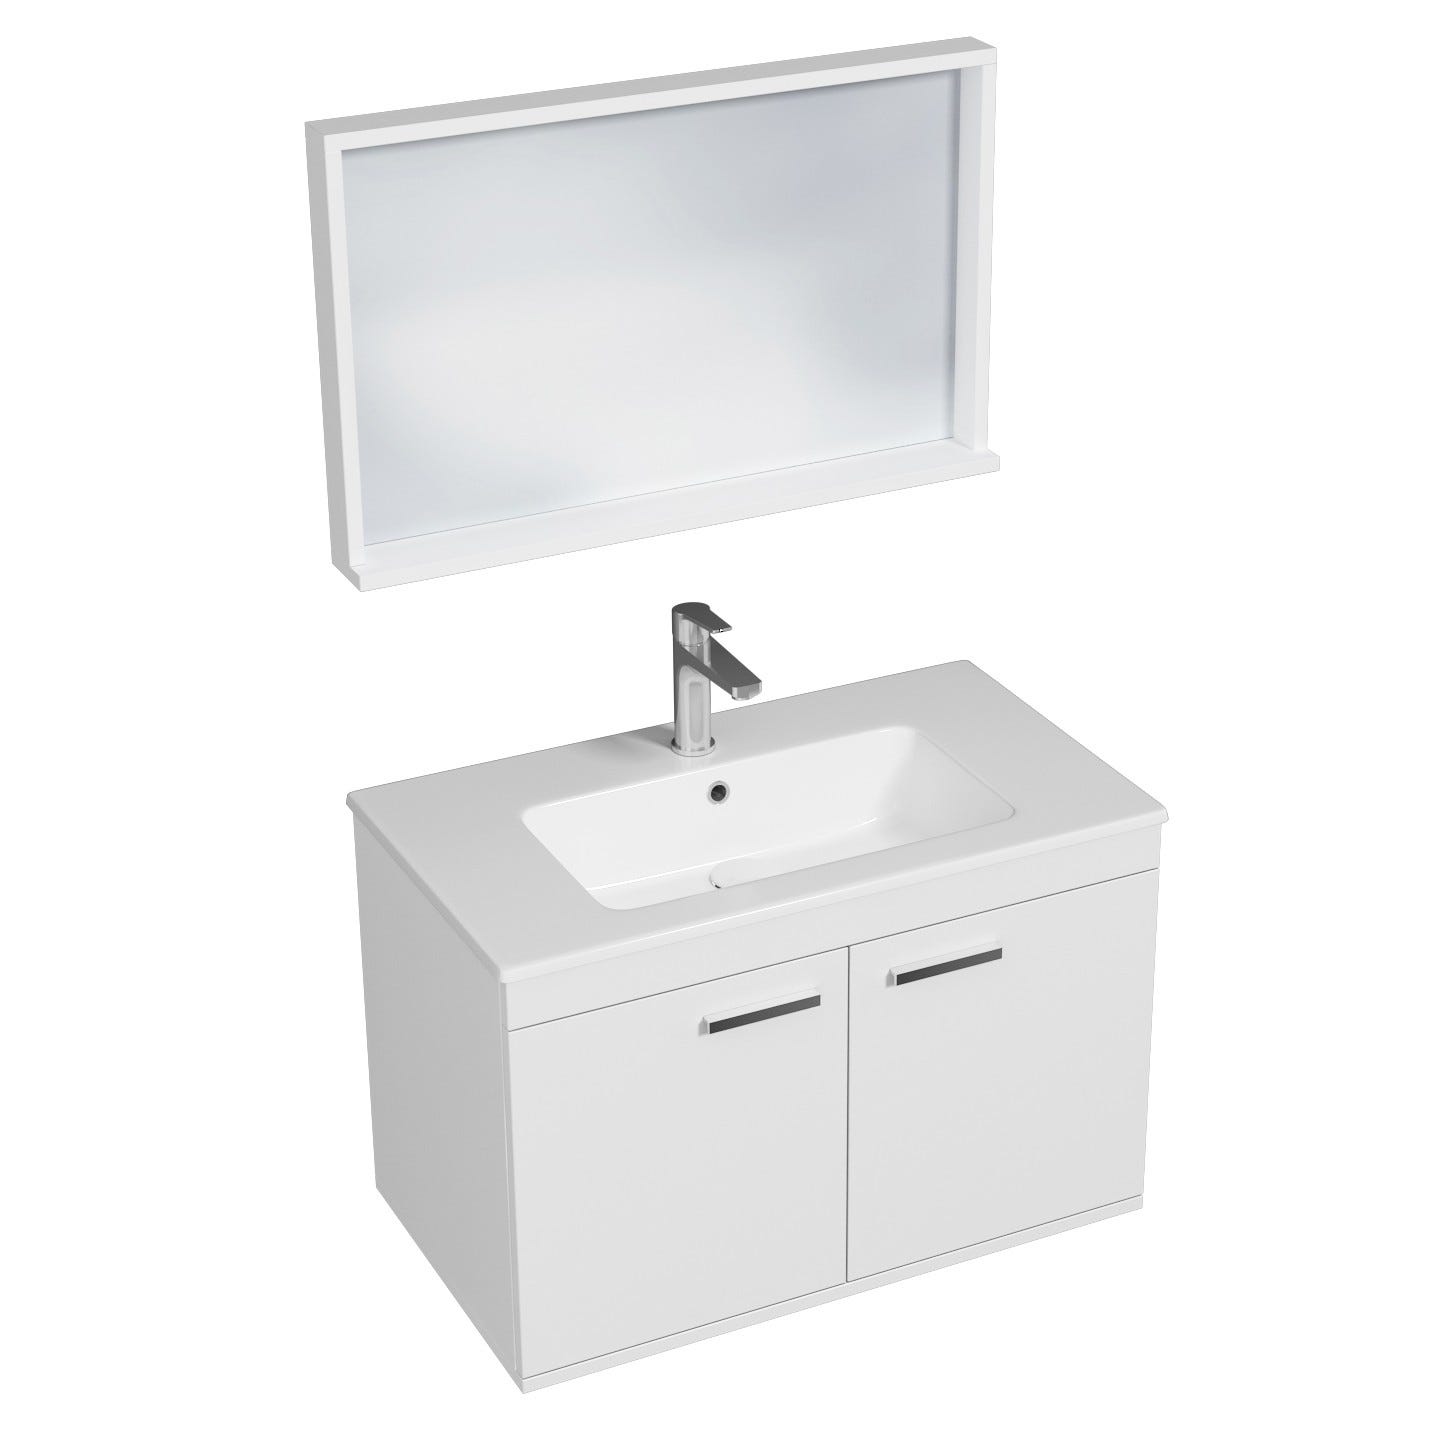 RUBITE Meuble salle de bain simple vasque 2 portes blanc largeur 80 cm + miroir cadre 0